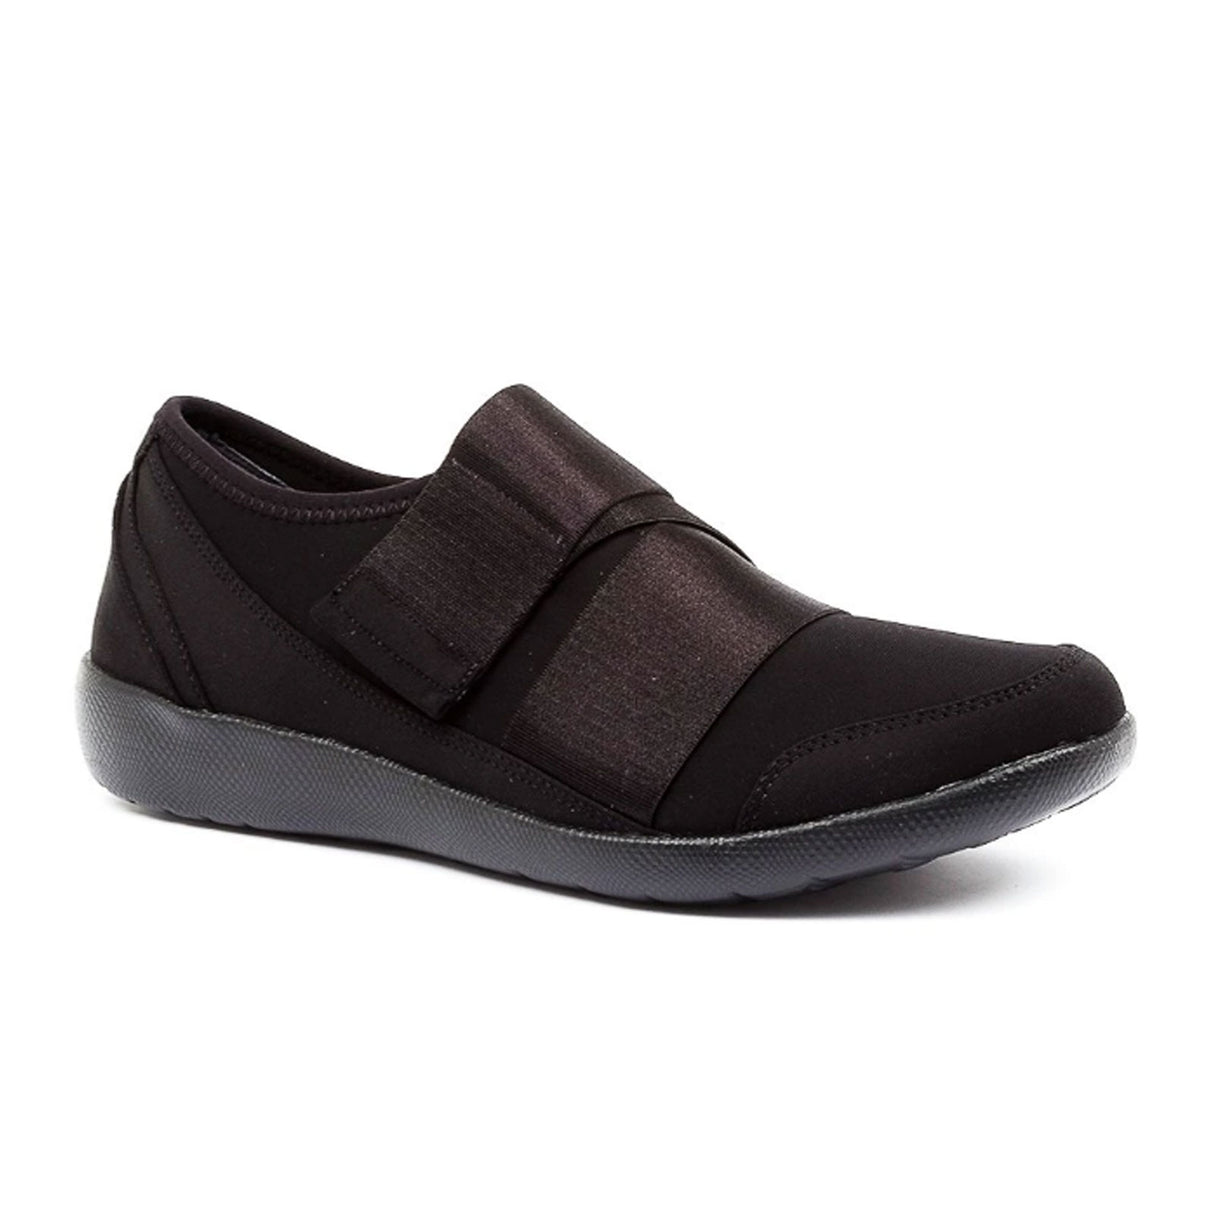 Ziera Urban Sneaker (Women) - Black/Black Sole Dress-Casual - Sneakers - The Heel Shoe Fitters